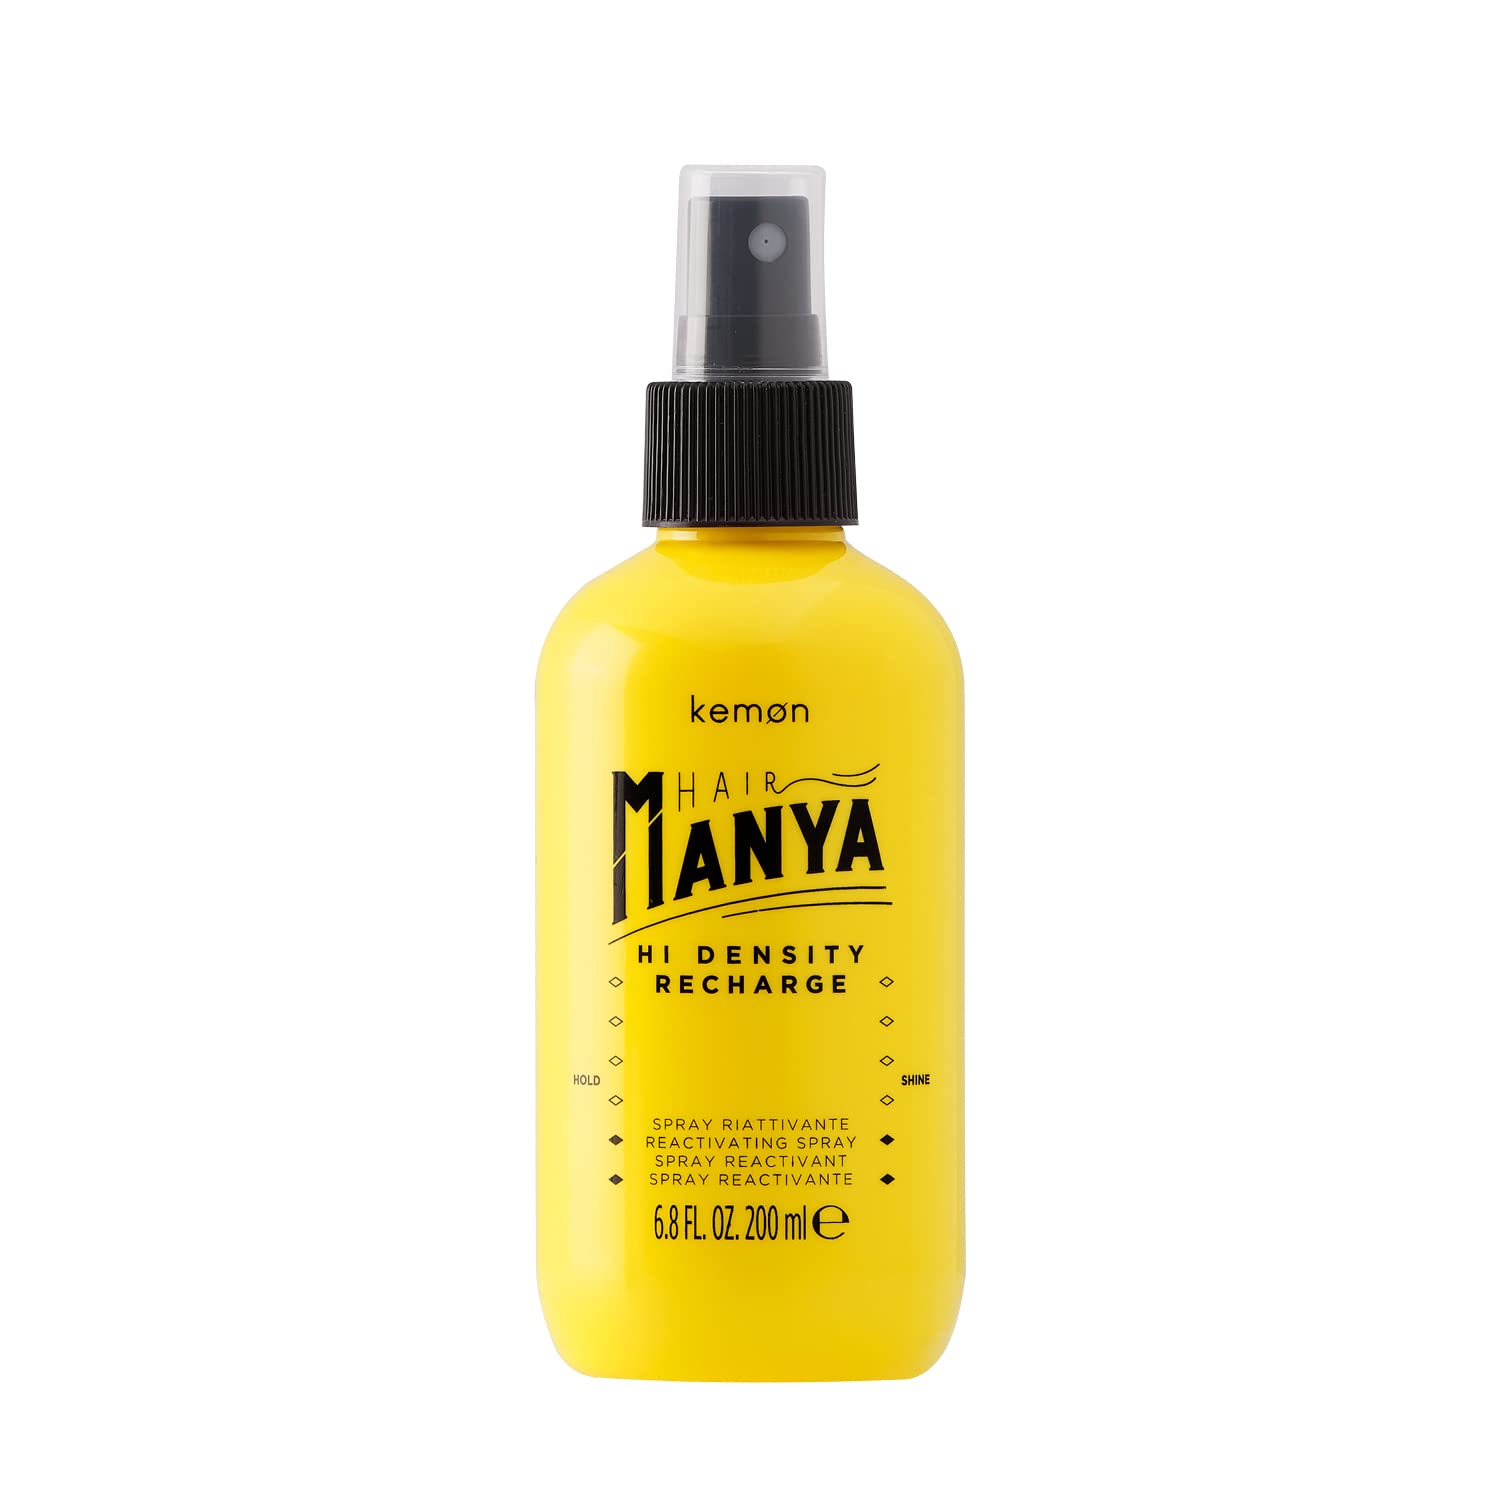 Kemon Hair Manya Hi Density Recharge - Feuchtigkeits-Spray für Locken, professionelle Haar-Pflege für kreative Looks, 200 ml